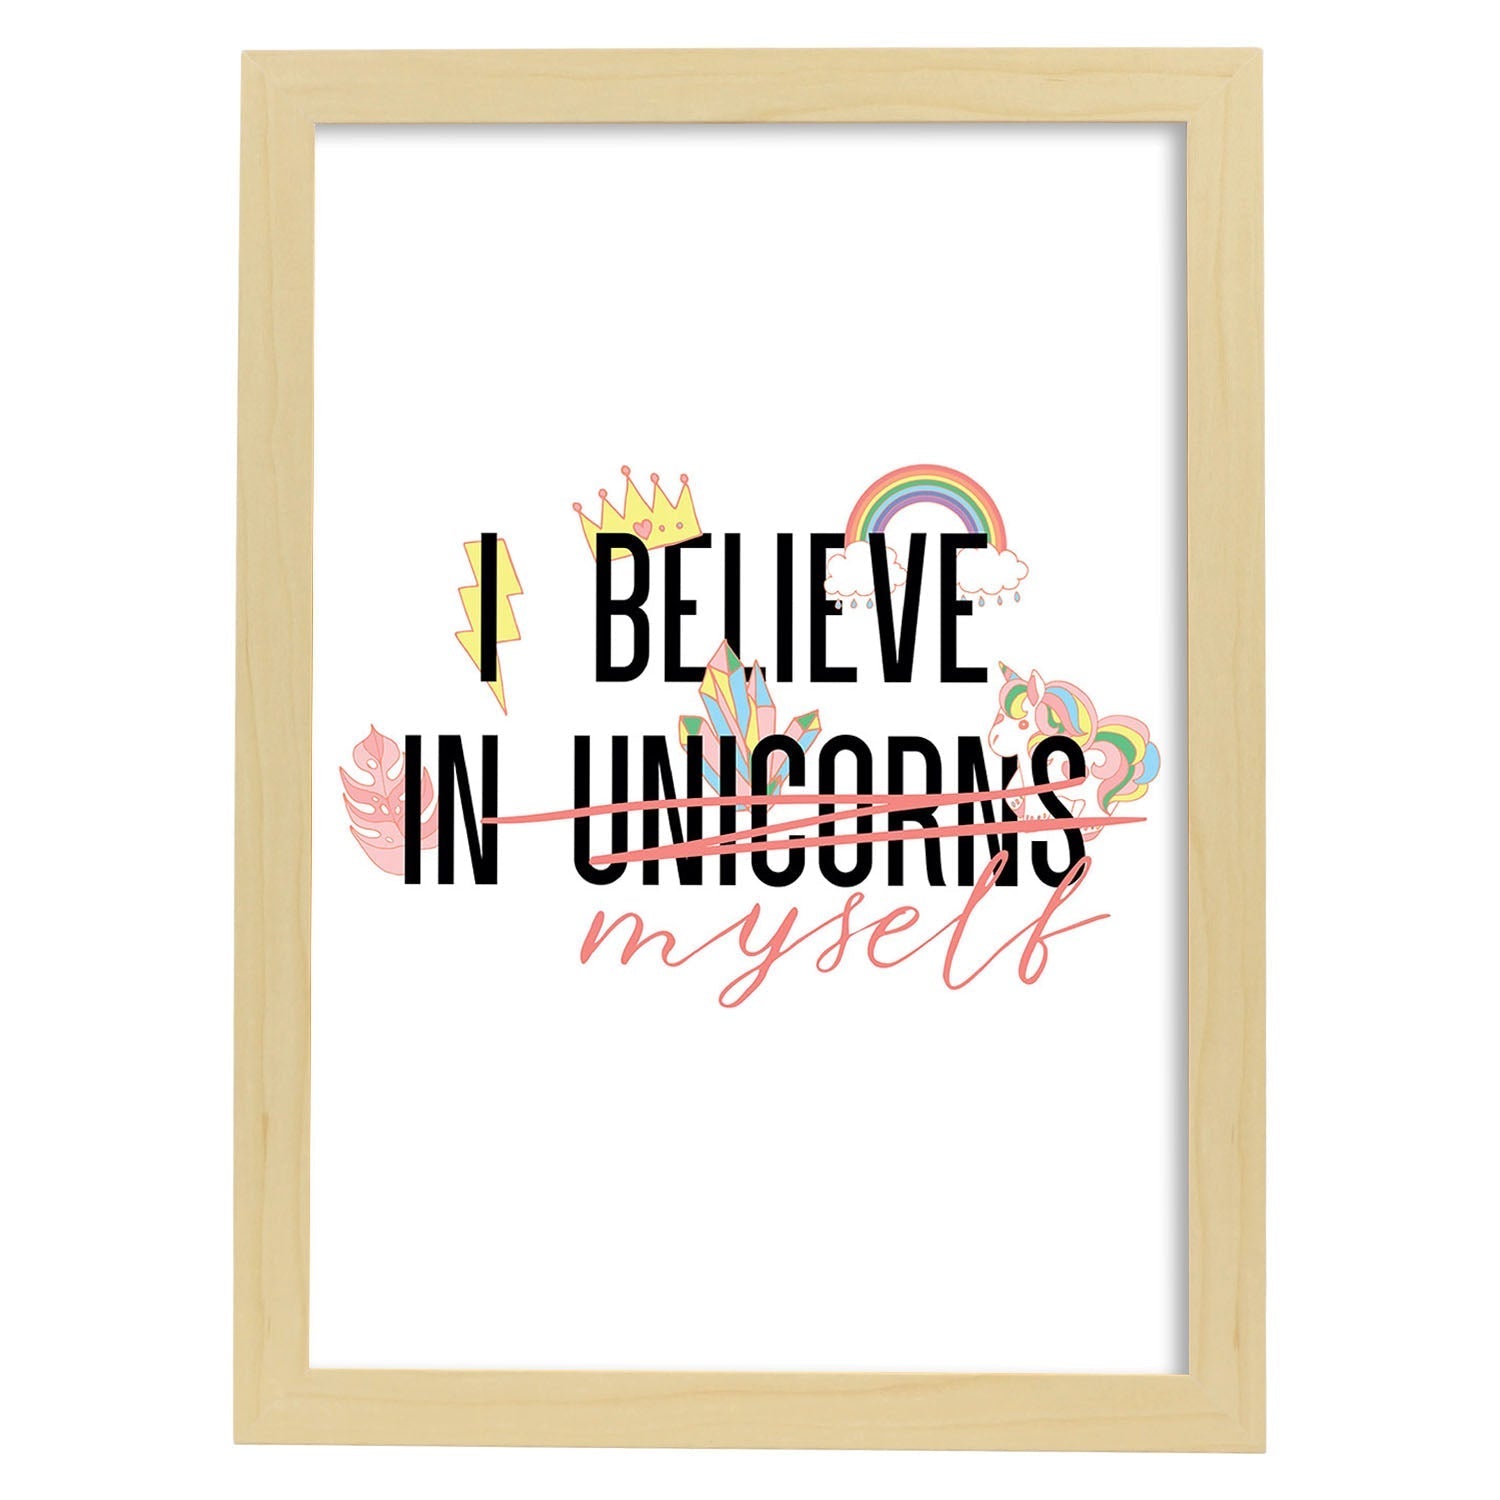 Posters con mensajes felices ilustrados. Lámina de decoración 'I Believe In Unicorns' con frases motivadoras y llenas de energia.-Artwork-Nacnic-A4-Marco Madera clara-Nacnic Estudio SL